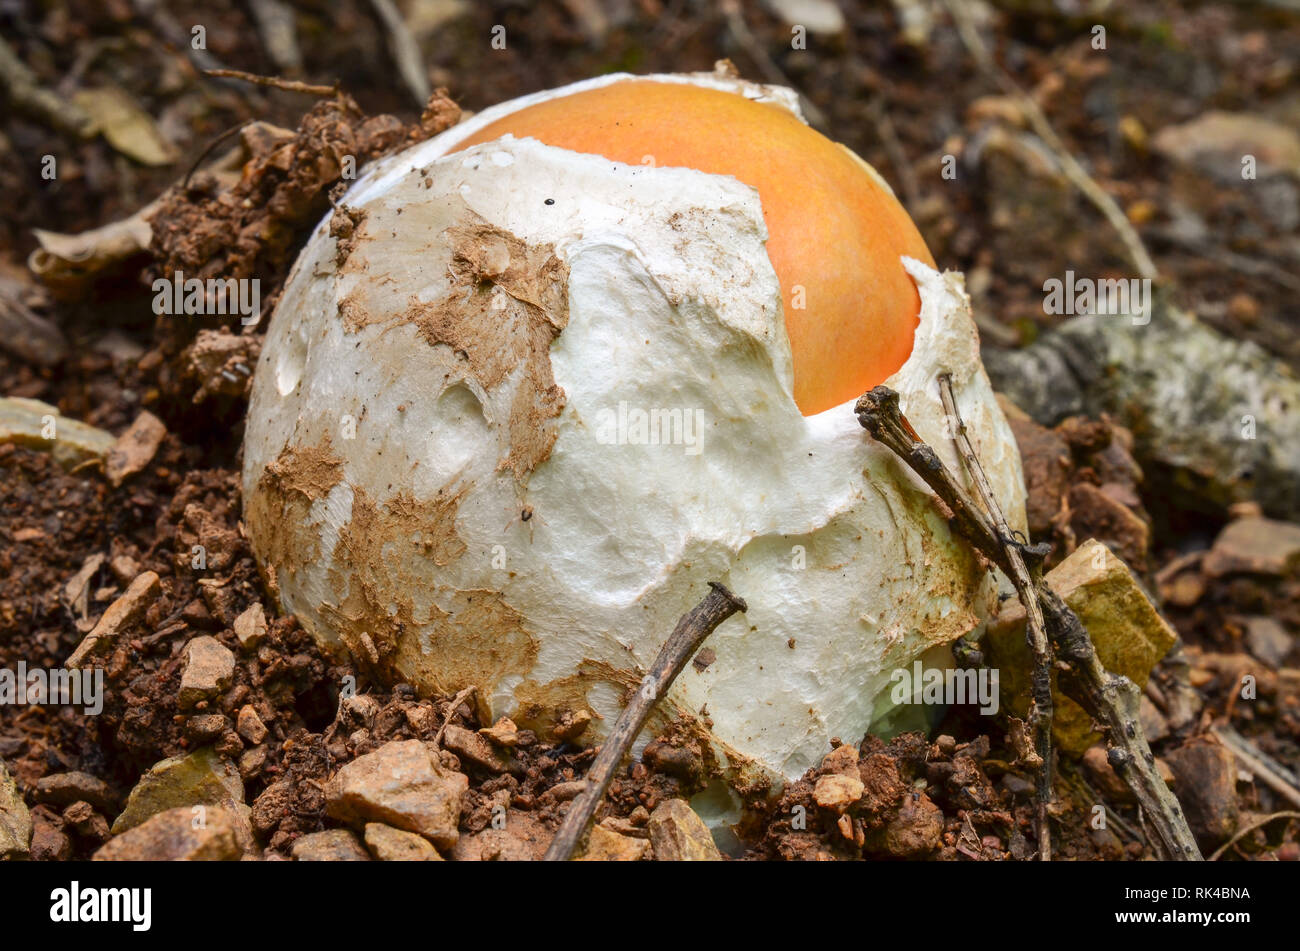 Muy joven, todavía en forma de huevo, comestibles, deliciosos y nutritivos, Amanita cesarea o Caesar's setas en hábitat natural Foto de stock